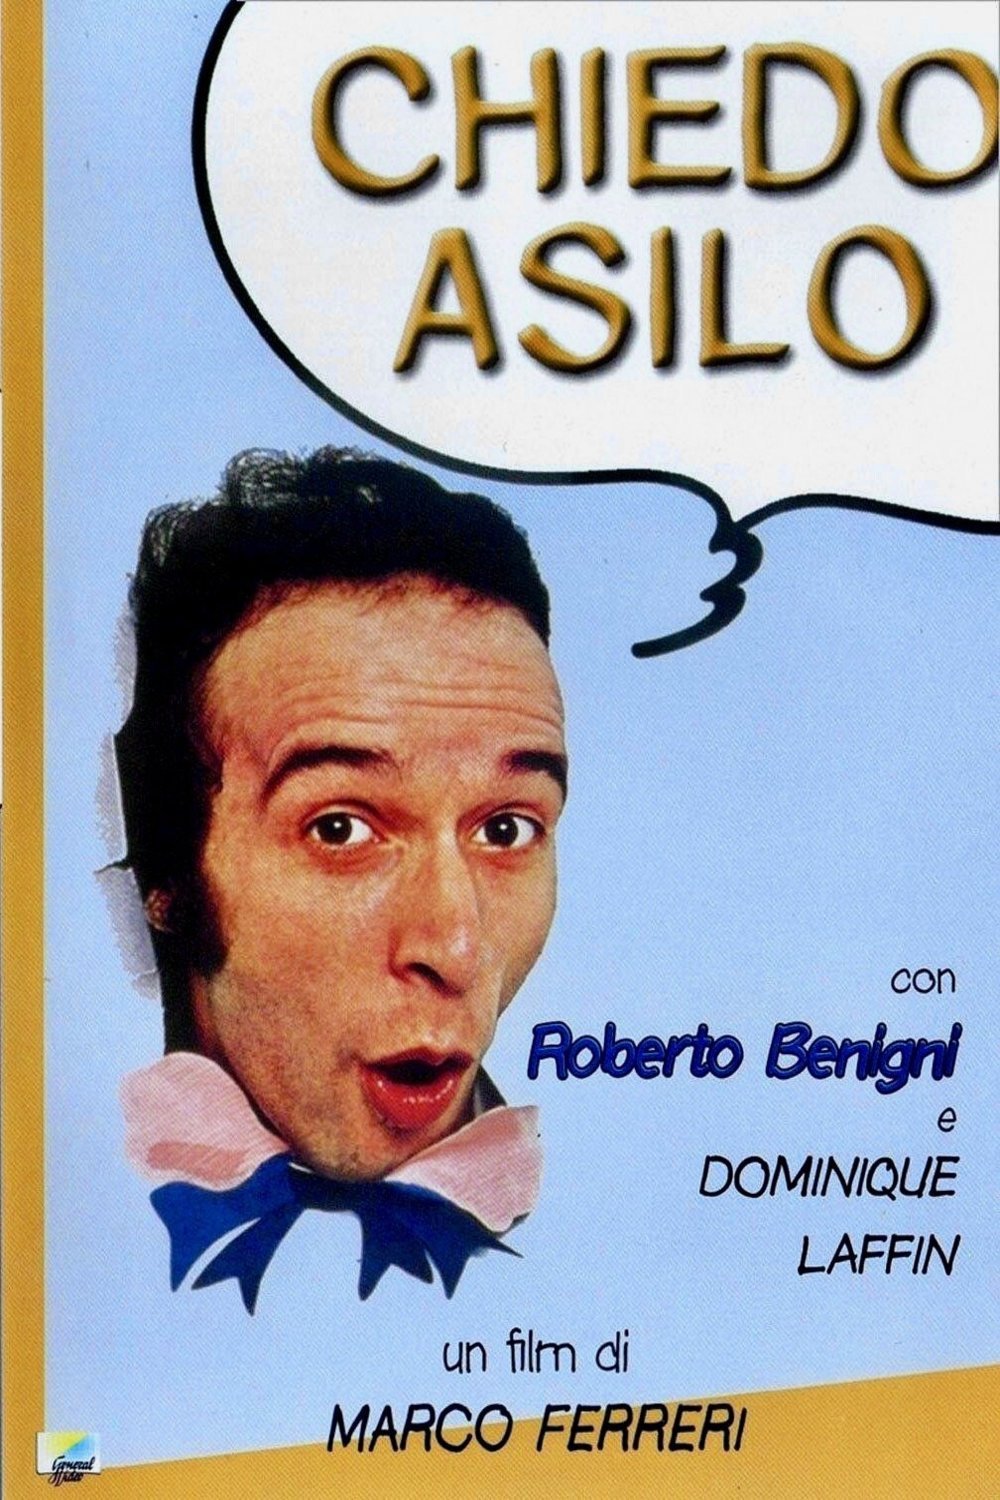 Italian poster of the movie Chiedo asilo